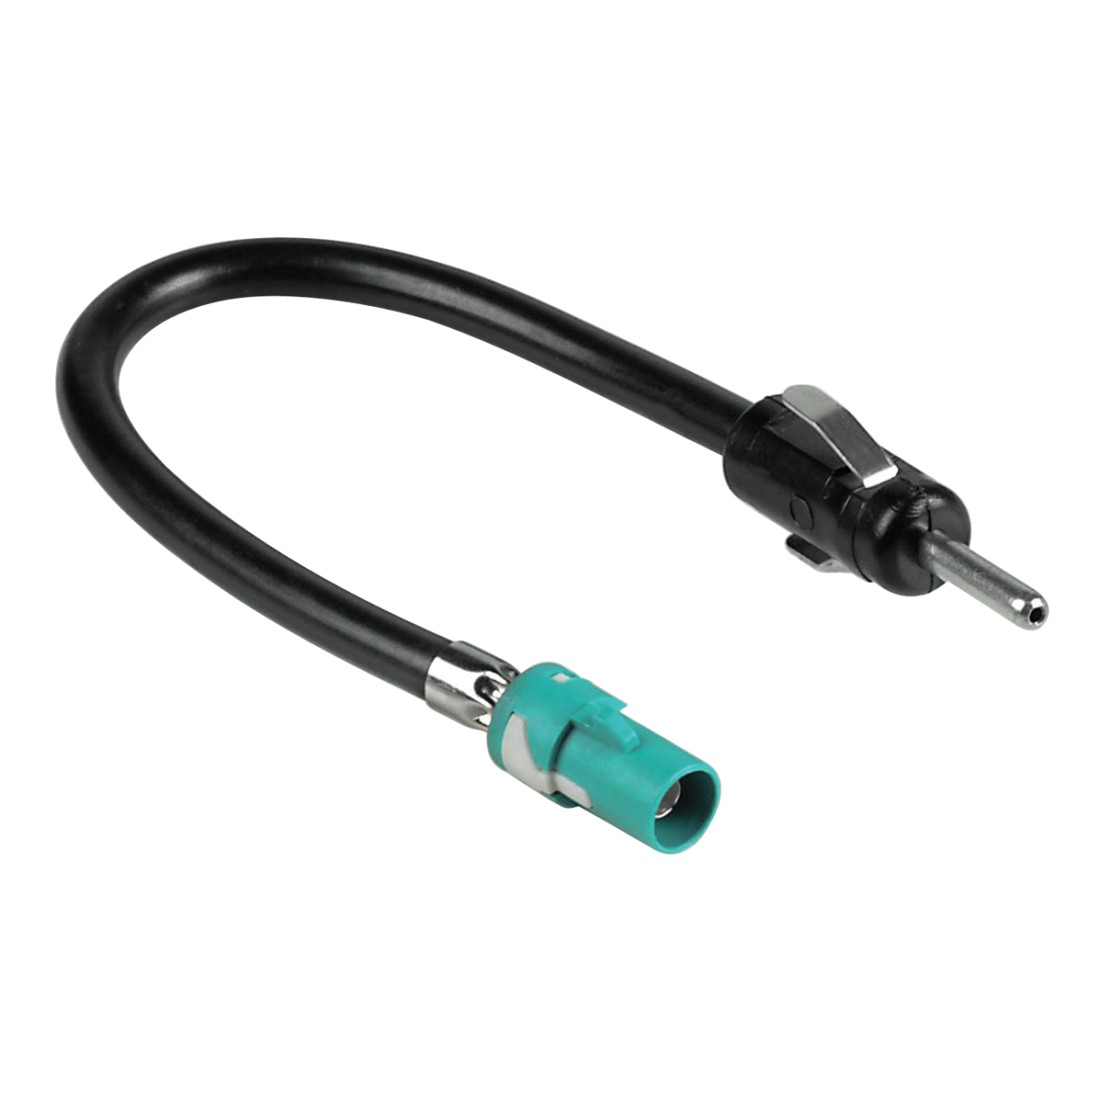 Antennen-Adapter für Audi / Mercedes / Seat / Skoda / VW, auf DIN